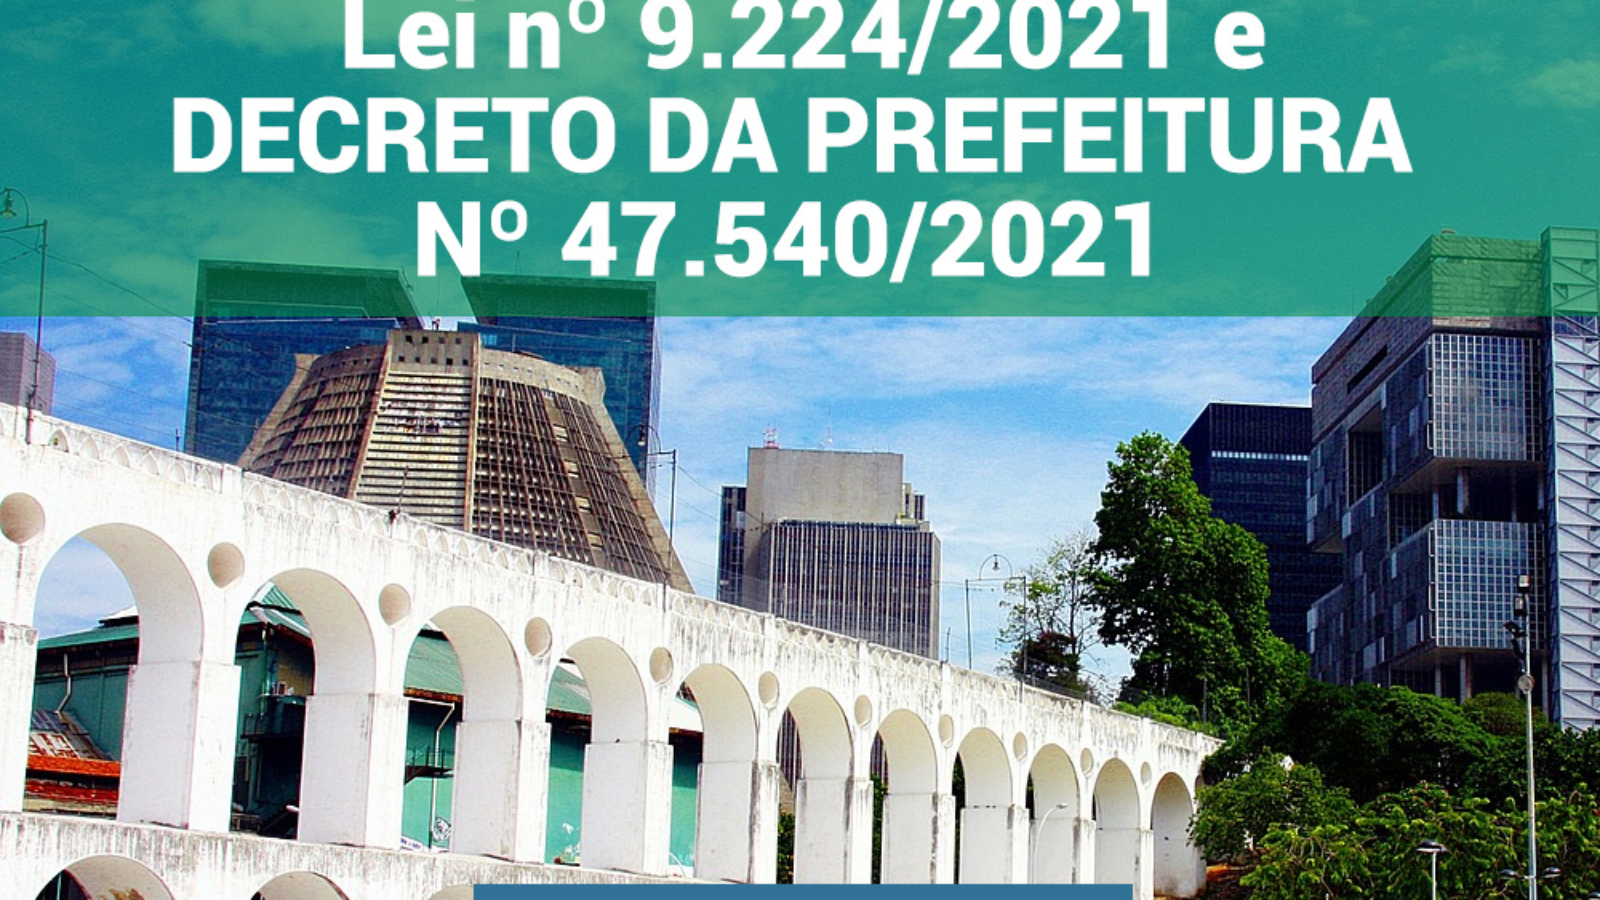 NORMAS PARA FUNCIONAMENTO DO COMERCIO DO MUNIC RIO DE JANEIRO 26/03 a 04/04/2021.